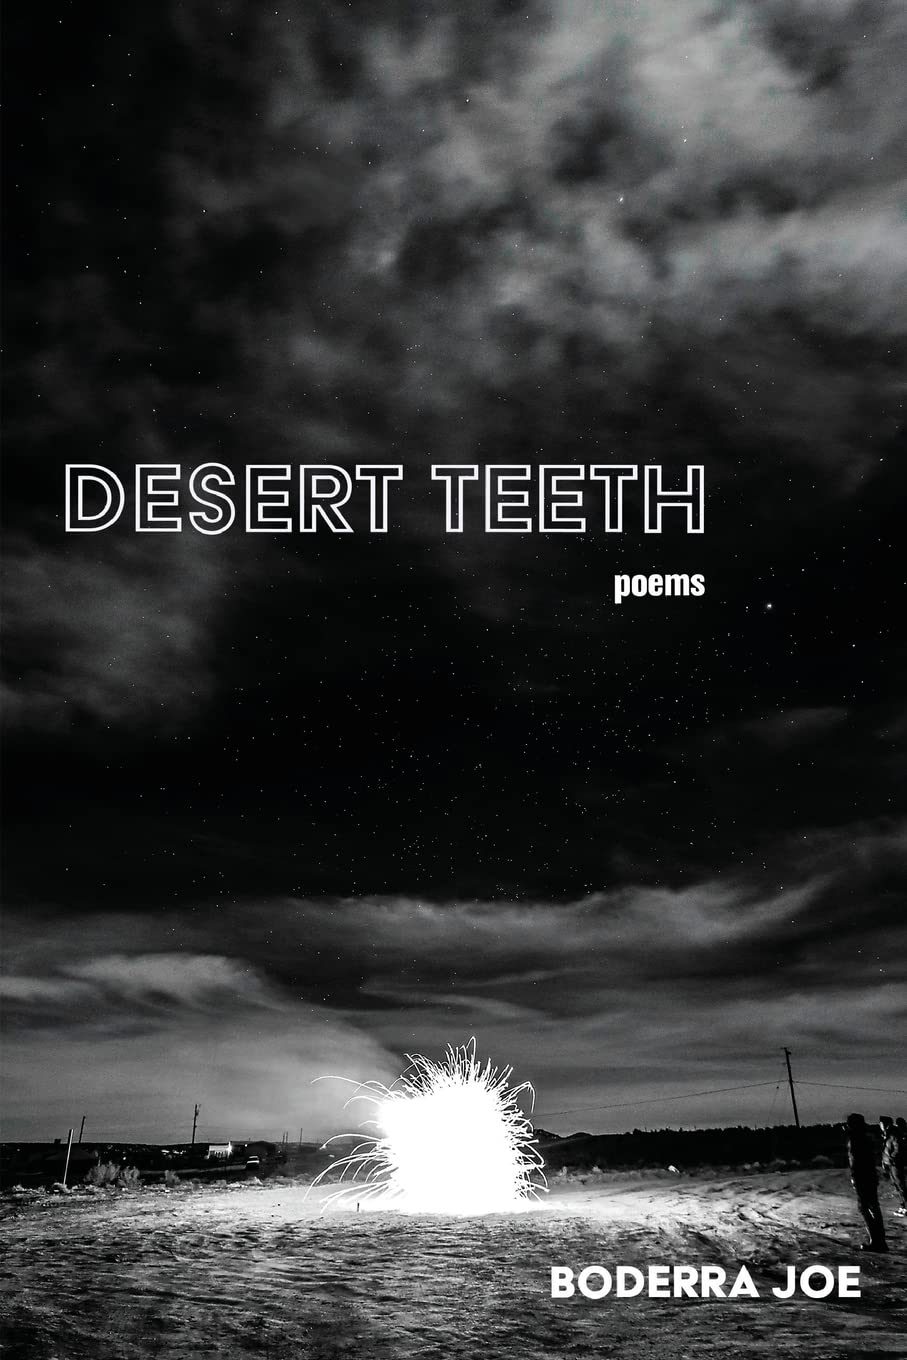 Desert Teeth by Boderra Joe